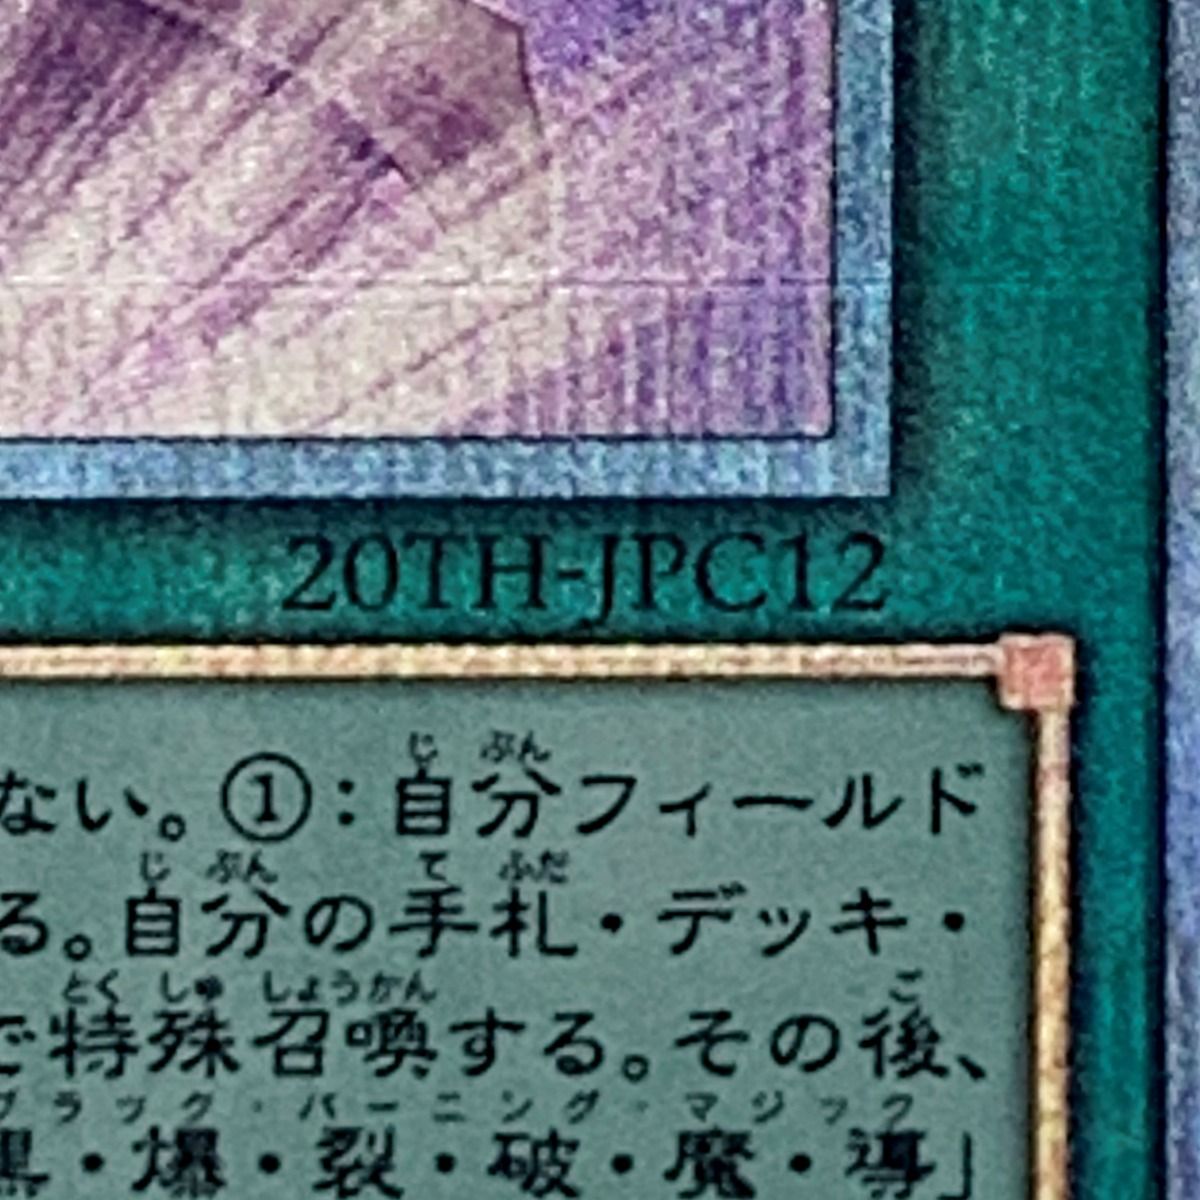 遊戯王 トレカ《 師弟の絆 》20thシークレット / 20TH-JPC12